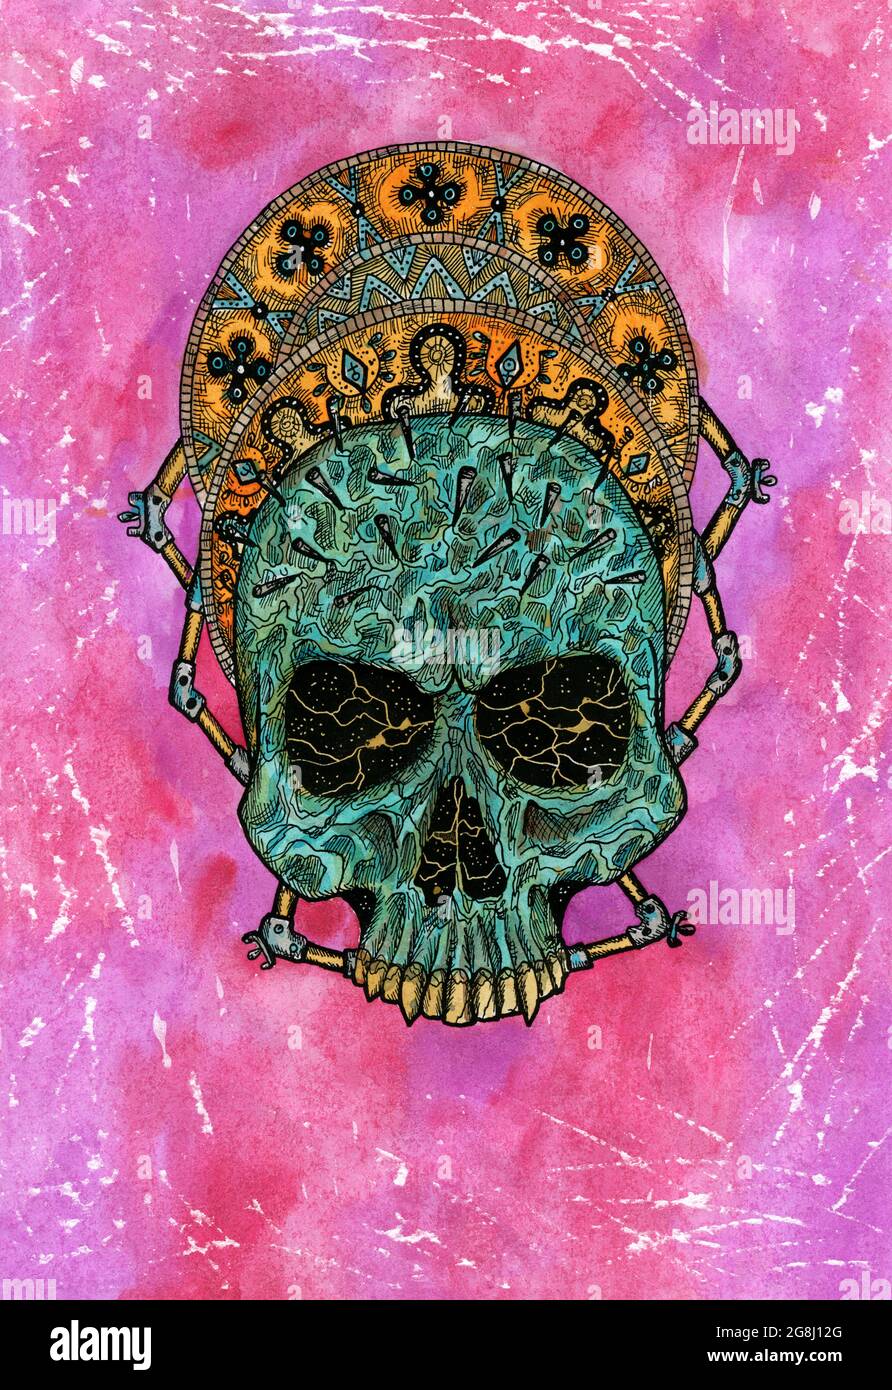 Gestylte Aquarell-Illustration von gruseligen Schädel vor rosa Grunge Hintergrund. Mystische Zeichnung für Halloween mit esoterischem, gotischem, okkulten Konzept Stockfoto